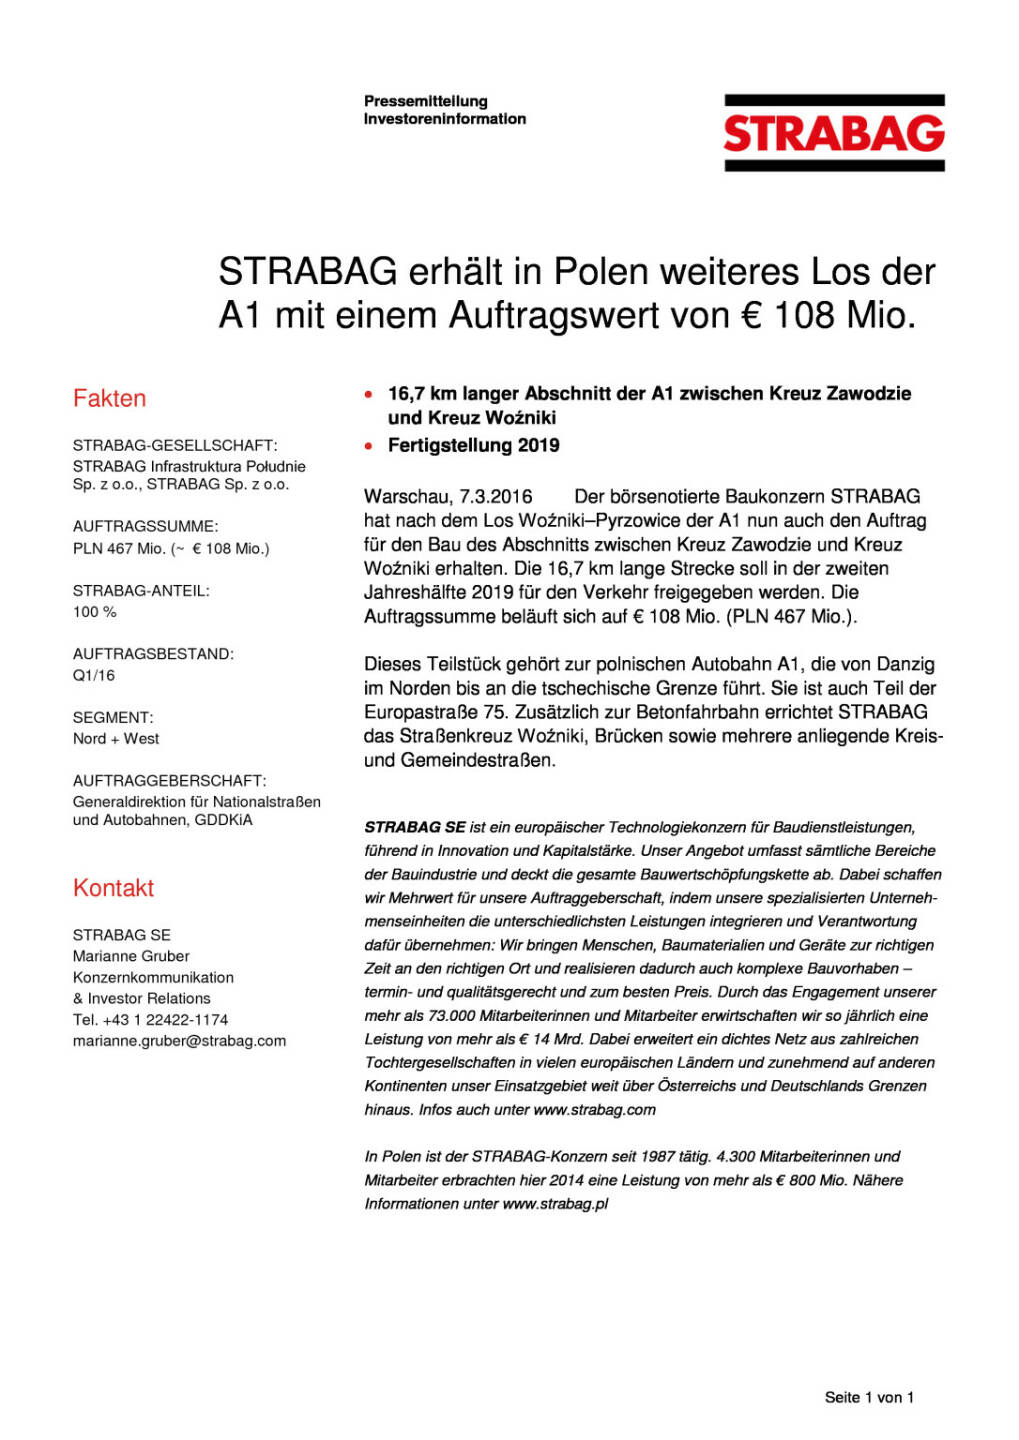 Strabag erhält in Polen weiteres Los der A1 mit einem Auftragswert von € 108 Mio., Seite 1/1, komplettes Dokument unter http://boerse-social.com/static/uploads/file_737_strabag_erhalt_in_polen_weiteres_los_der_a1_mit_einem_auftragswert_von_108_mio.pdf